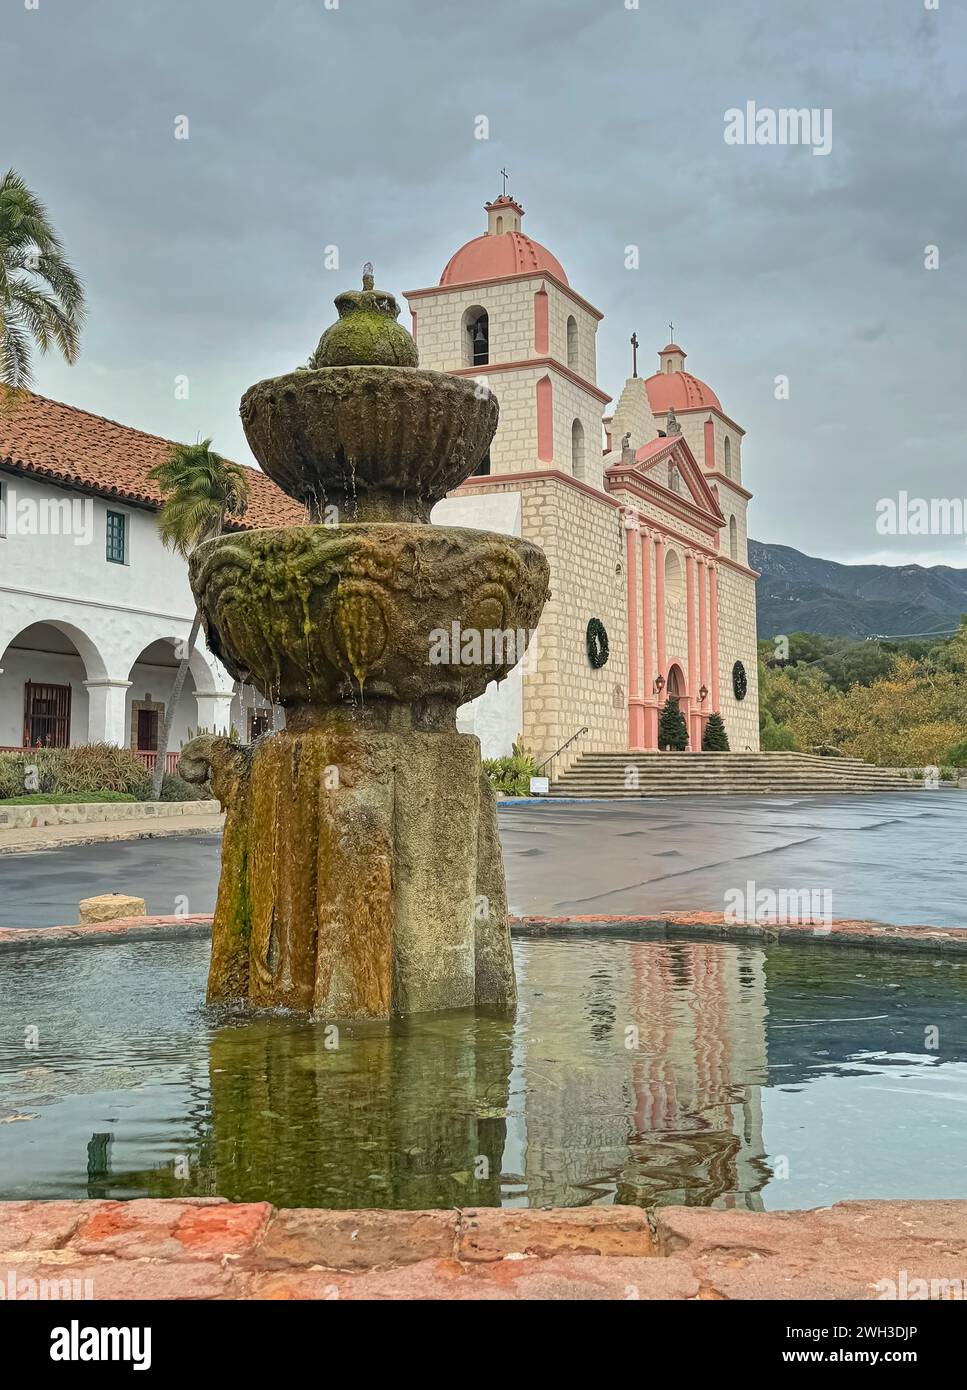 Santa Barbara, CA, USA - 18. Dezember 2023: Nahaufnahme des maurischen Brunnens an der Seite des Old Mission Church Building unter graublauem Himmel. Reflexion im Wasser Stockfoto